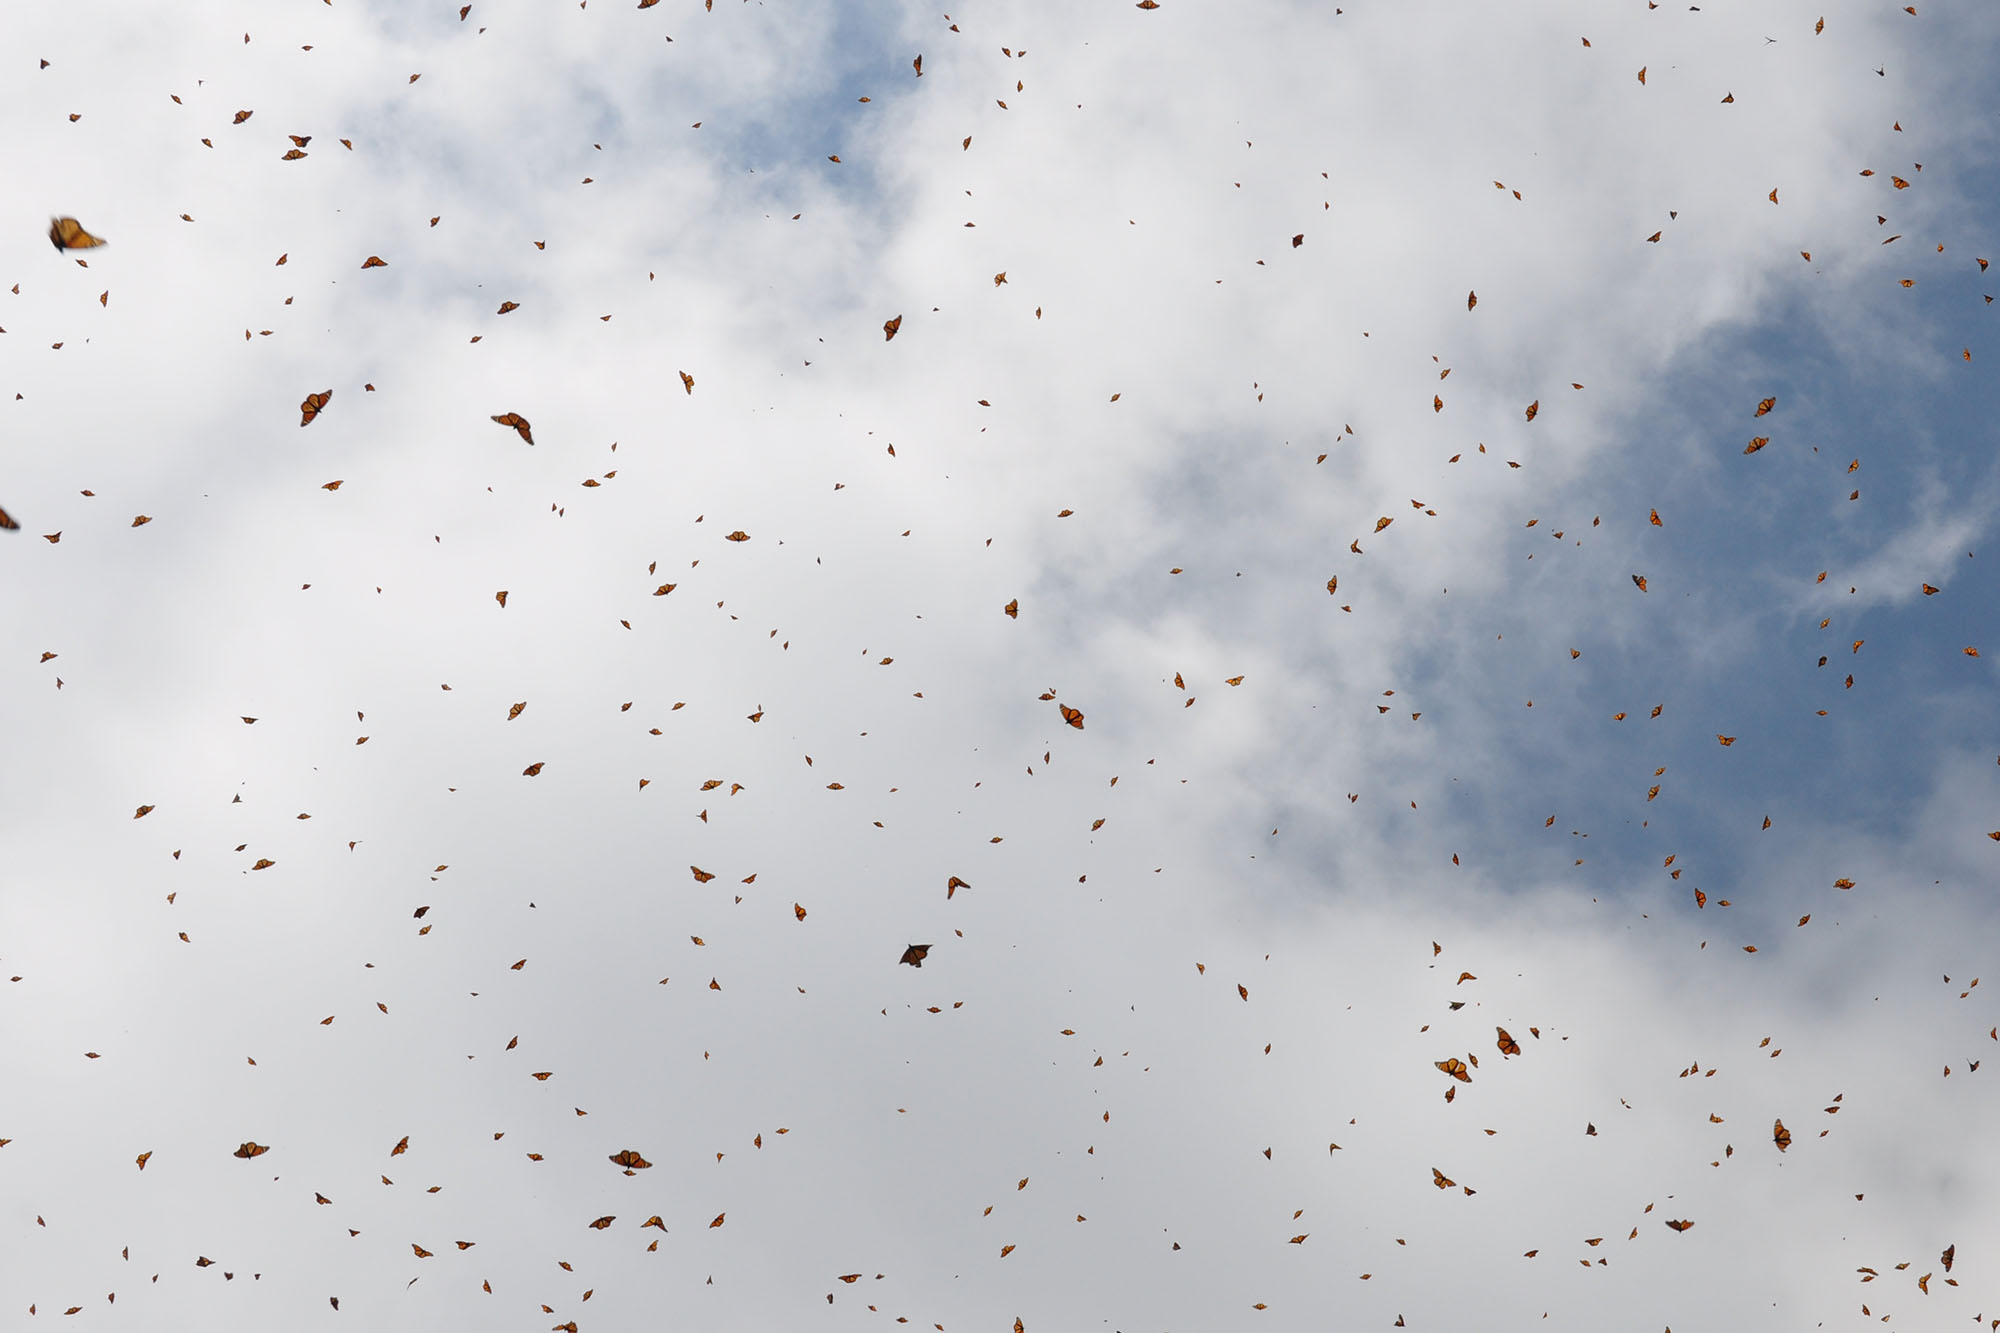 A sky full of monarch butterflies in flight